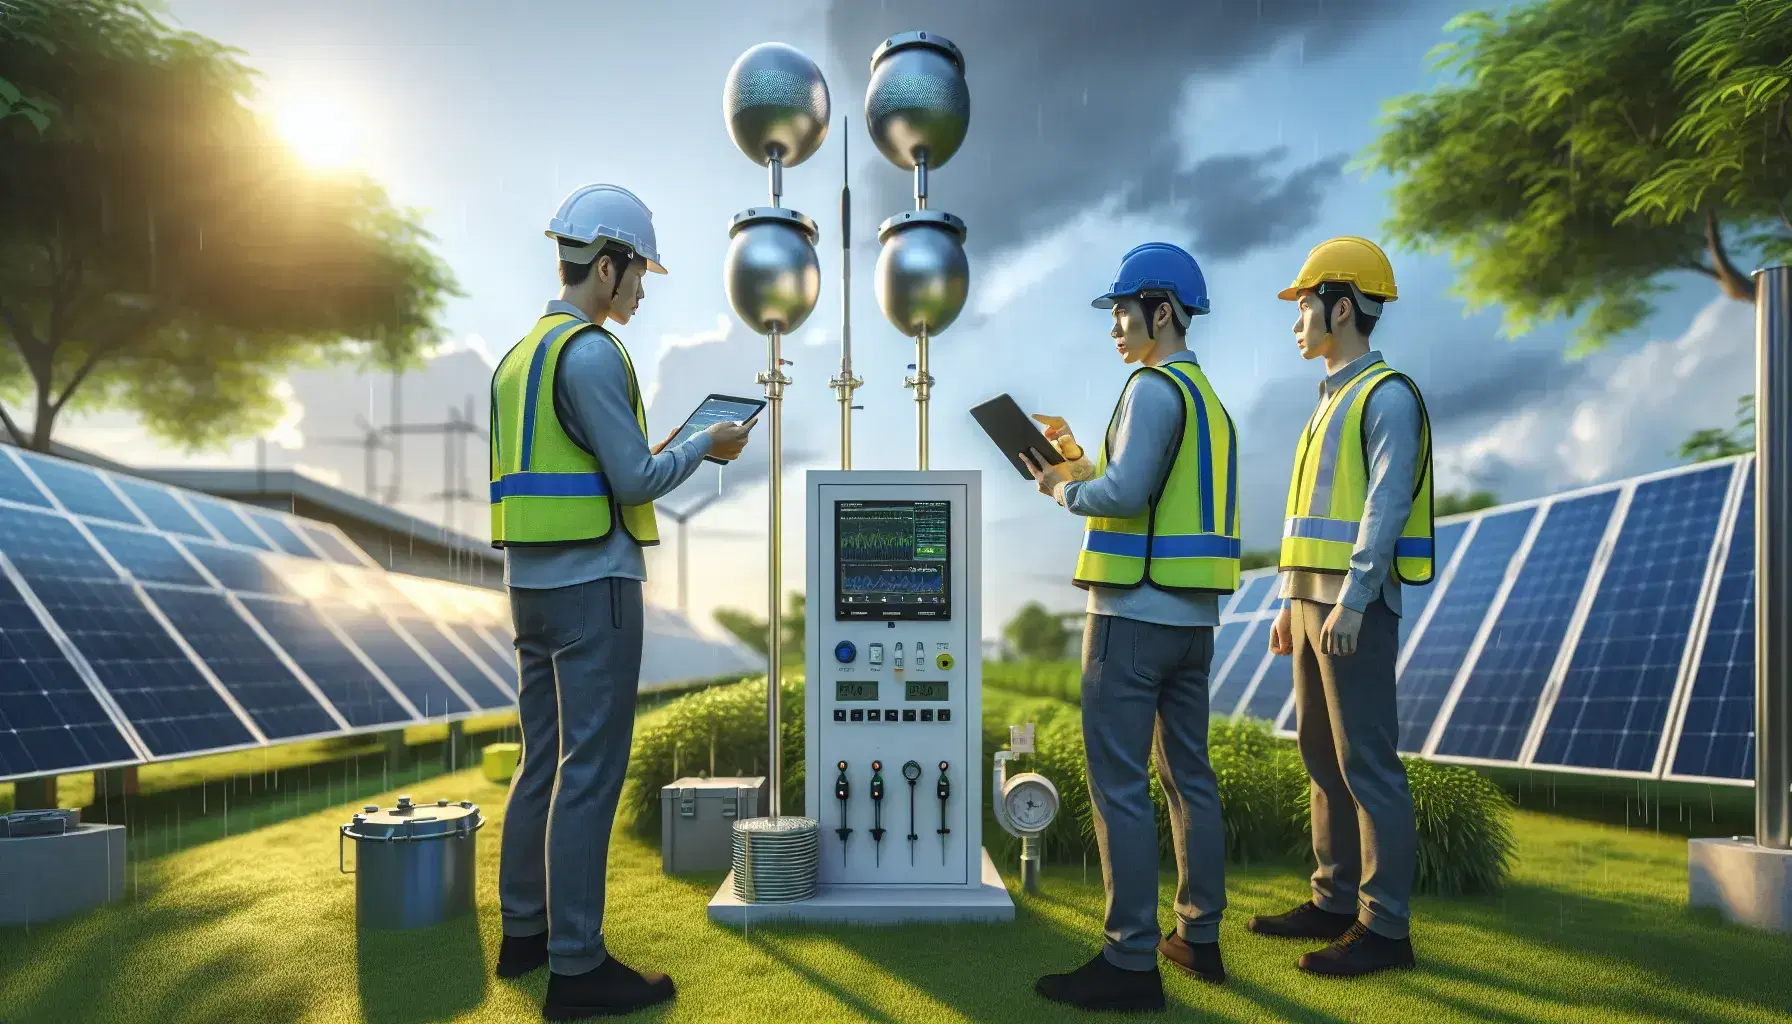 Tres profesionales con cascos y chalecos reflectantes revisan datos en una tablet frente a filas de paneles solares y una estación de monitoreo ambiental en un día parcialmente nublado.